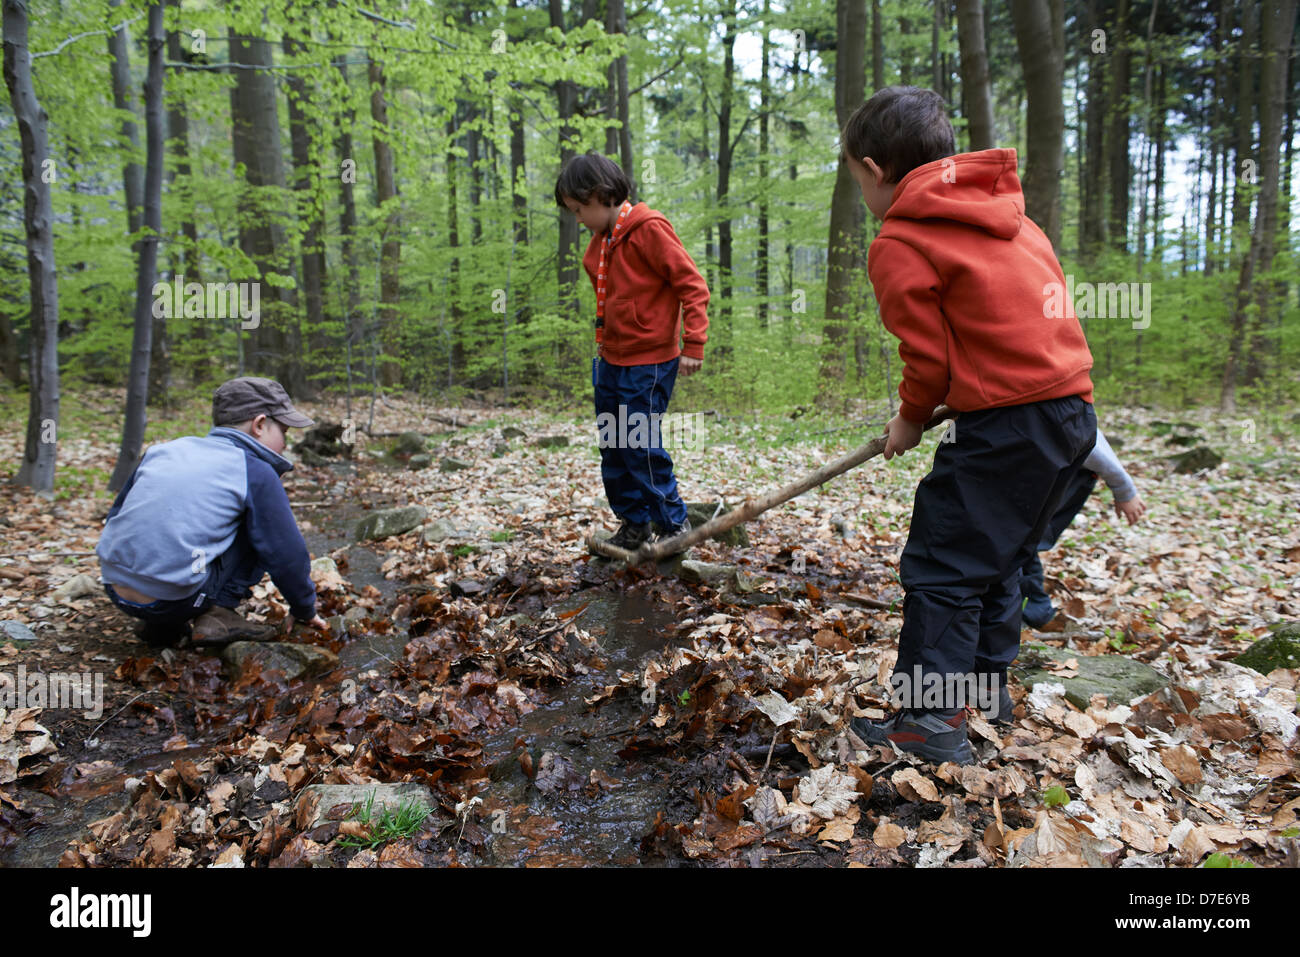 Kinder entdecken im Wald - Jungs spielen im freien Stockfoto